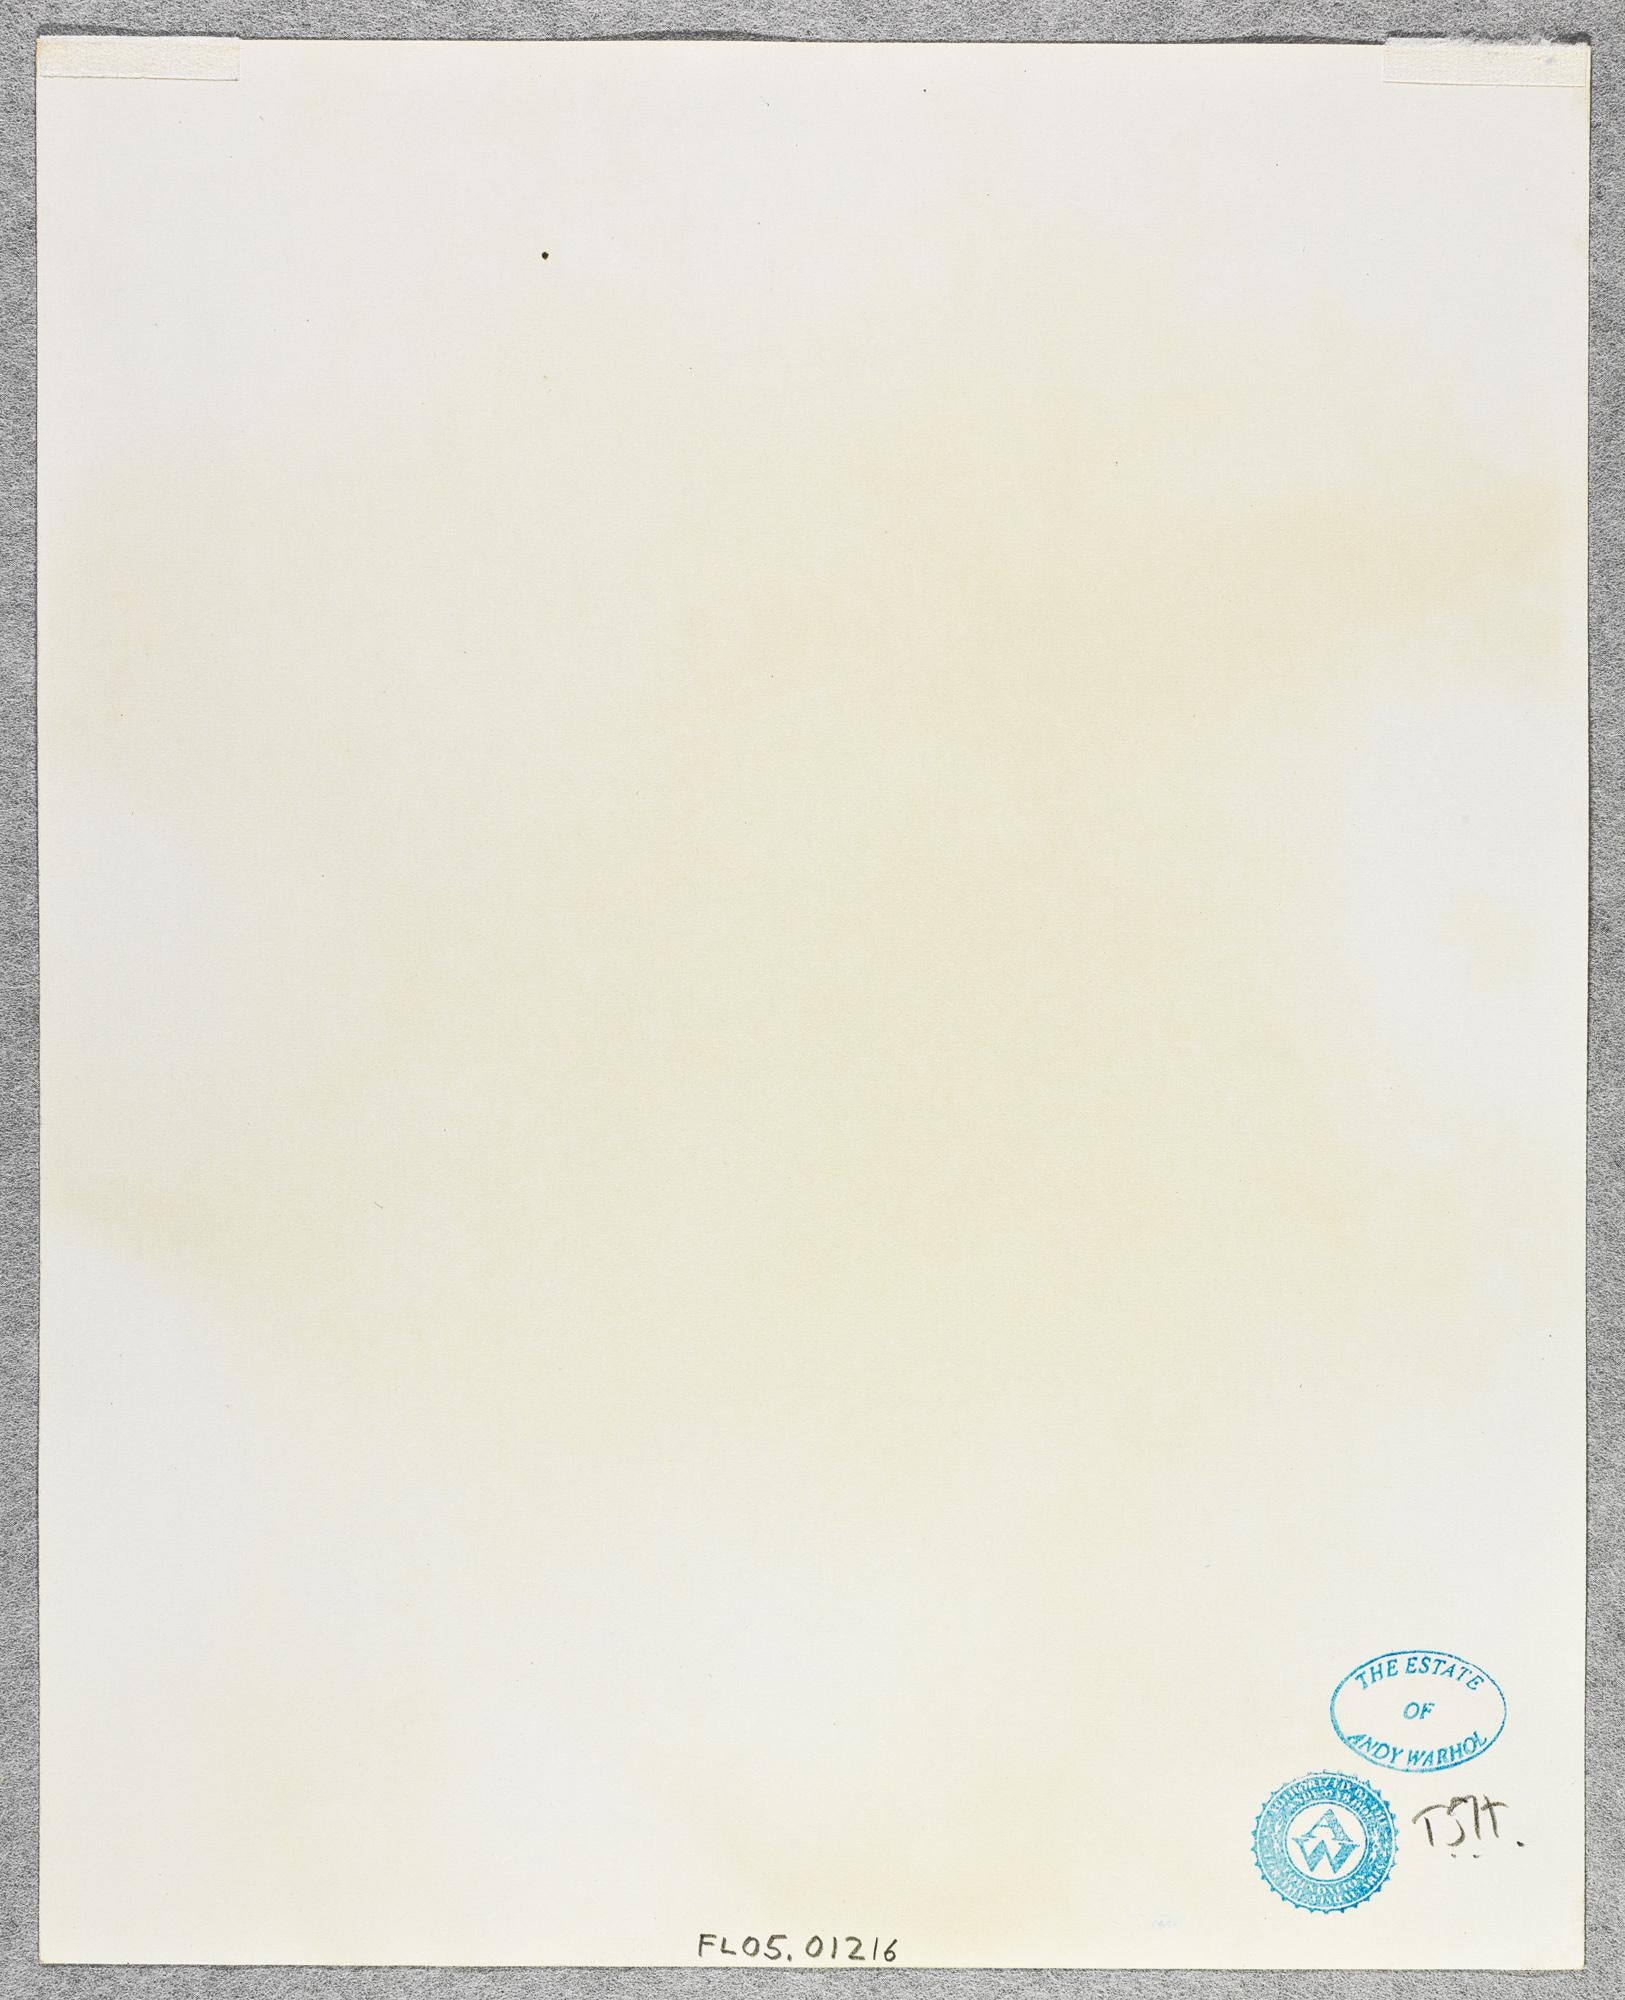 Gelatinesilberdruck von Halston Poolside im Beverly Hills Hotel mit Gelatinesilberdruck von Andy Warh – Photograph von Andy Warhol